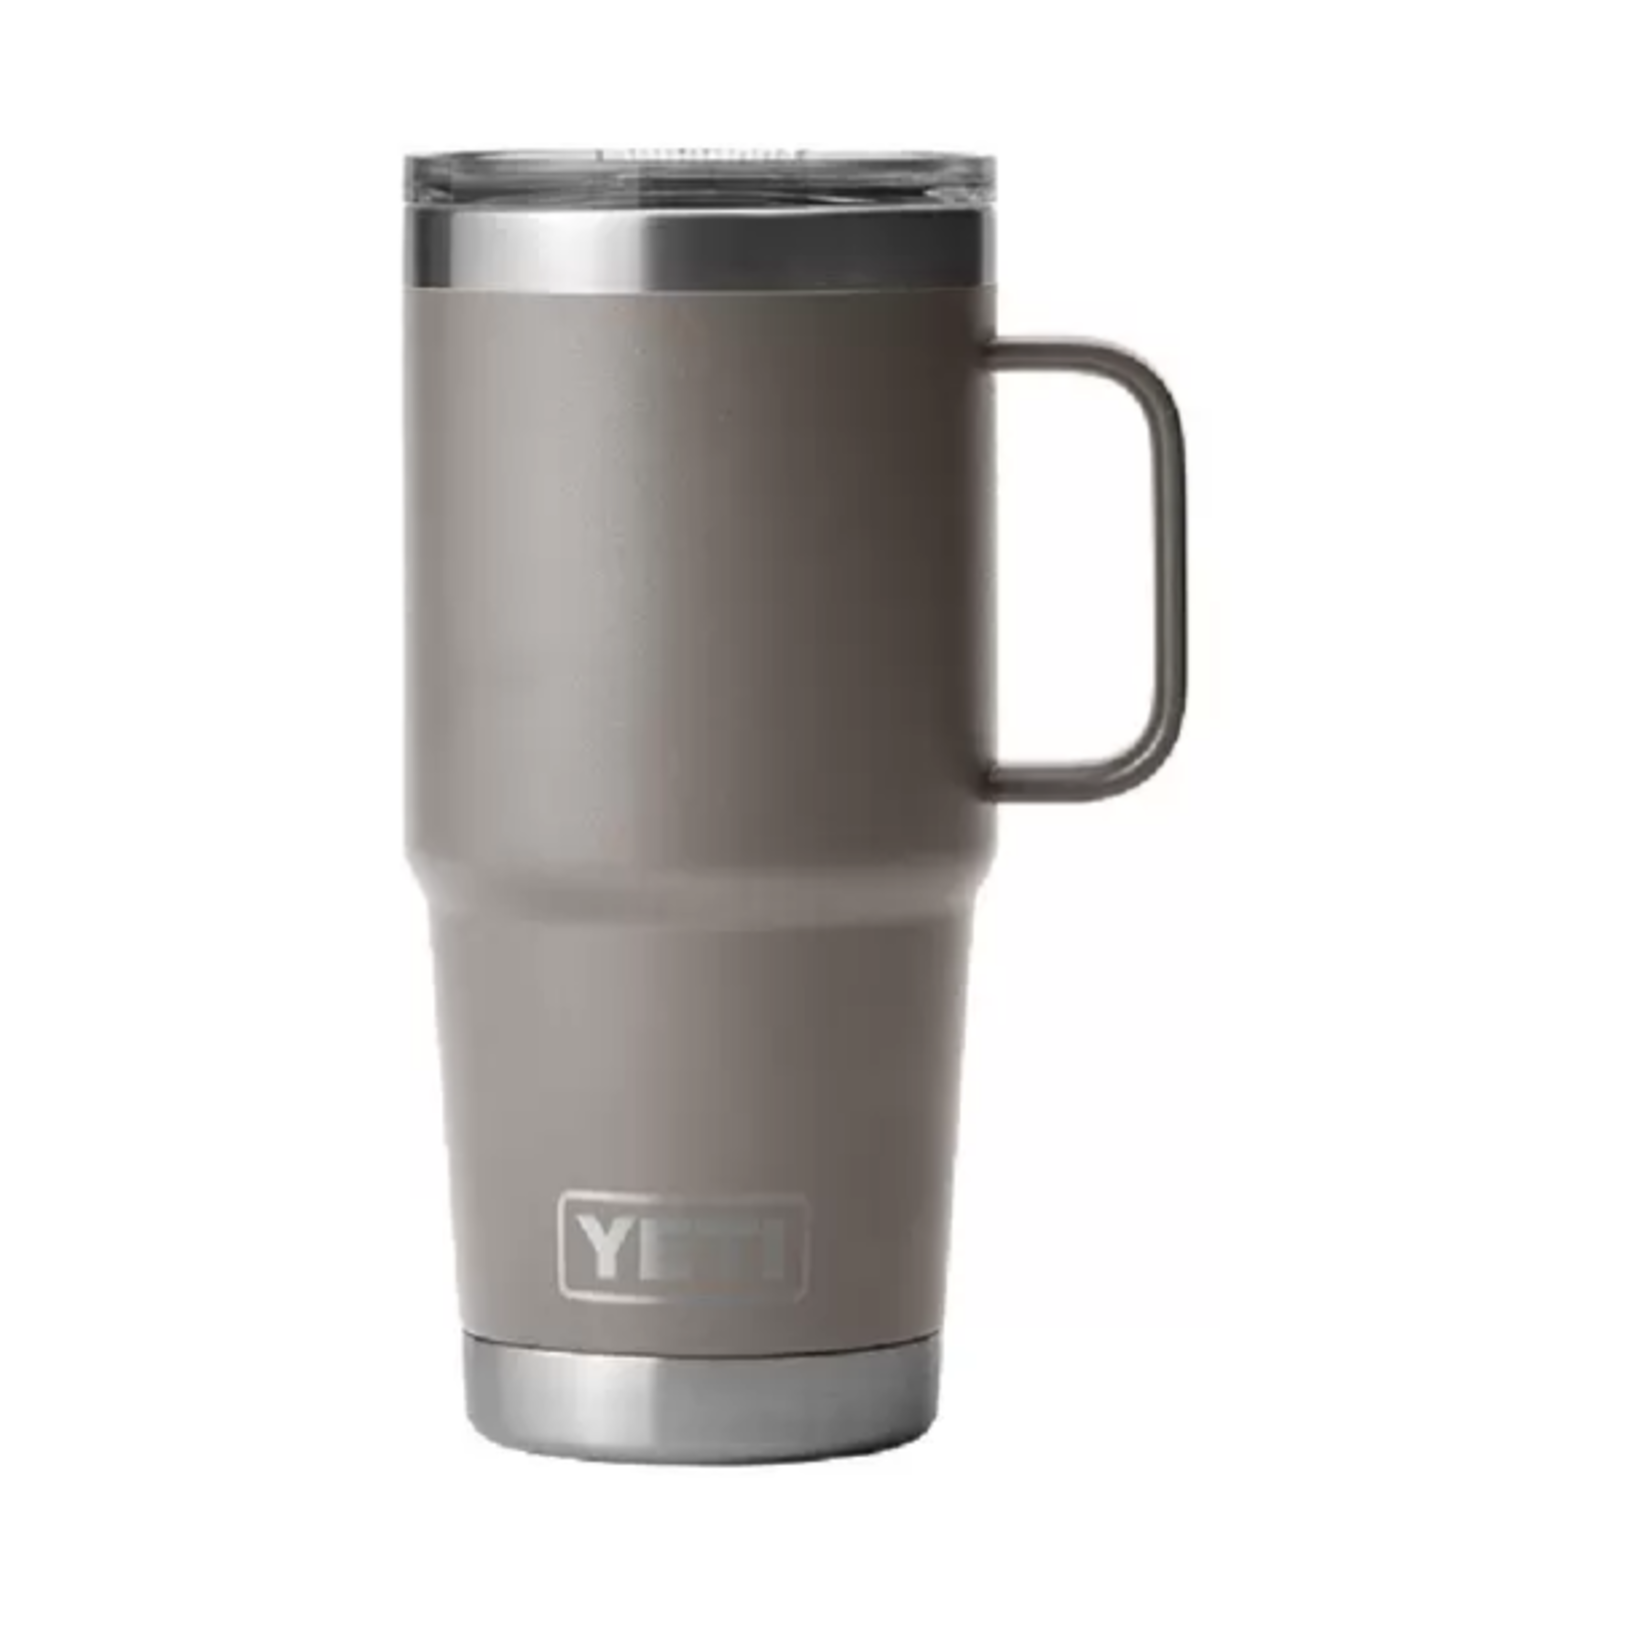 Yeti Yeti Rambler 20 Travel Mug